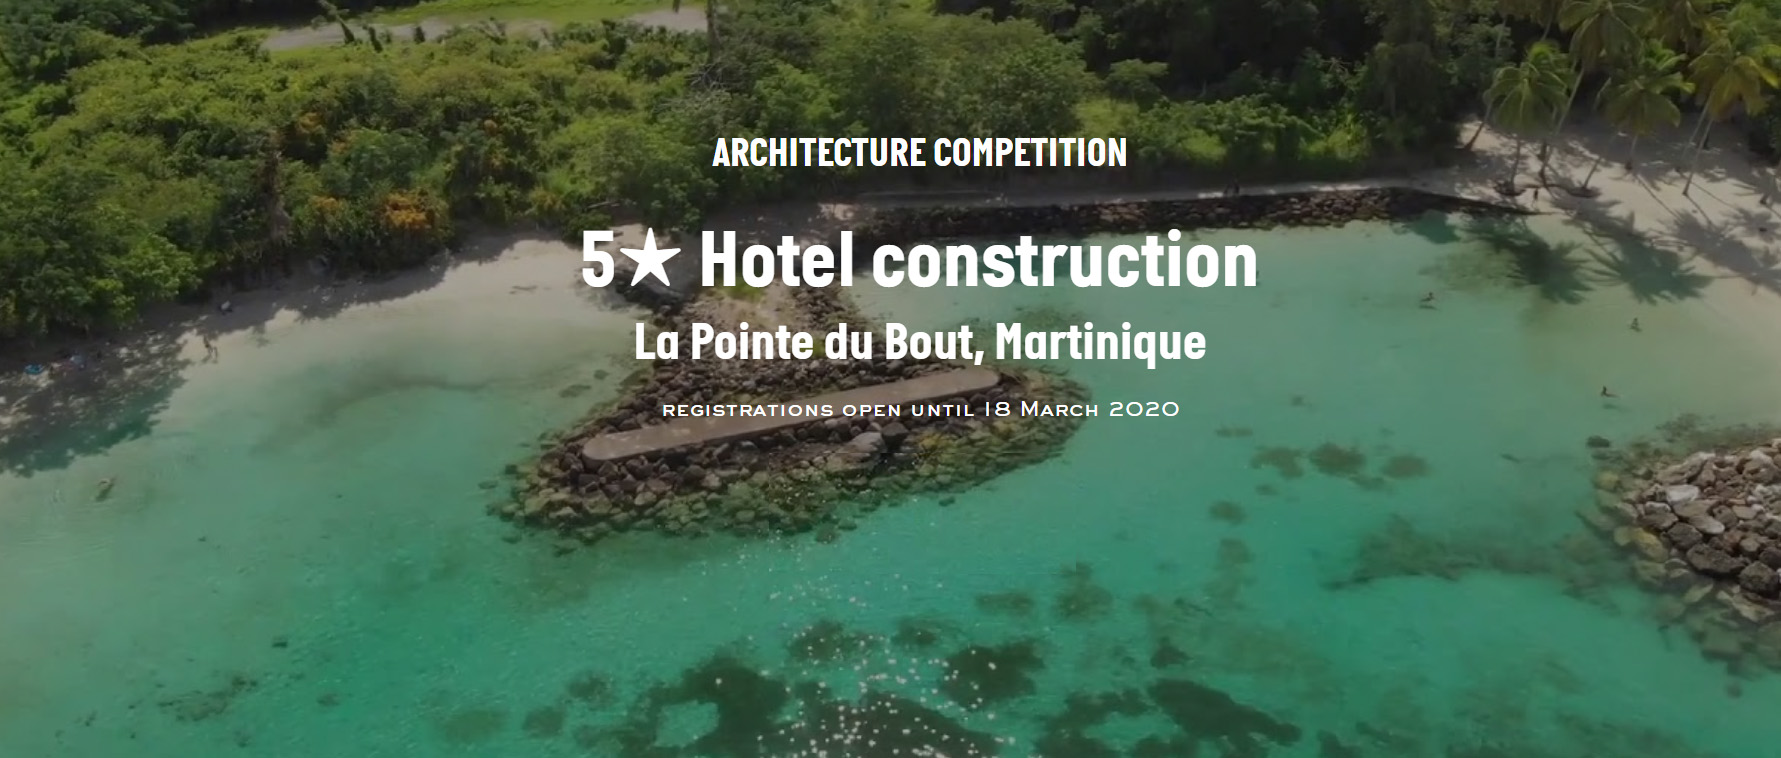 马提尼克岛五星级酒店建筑竞赛